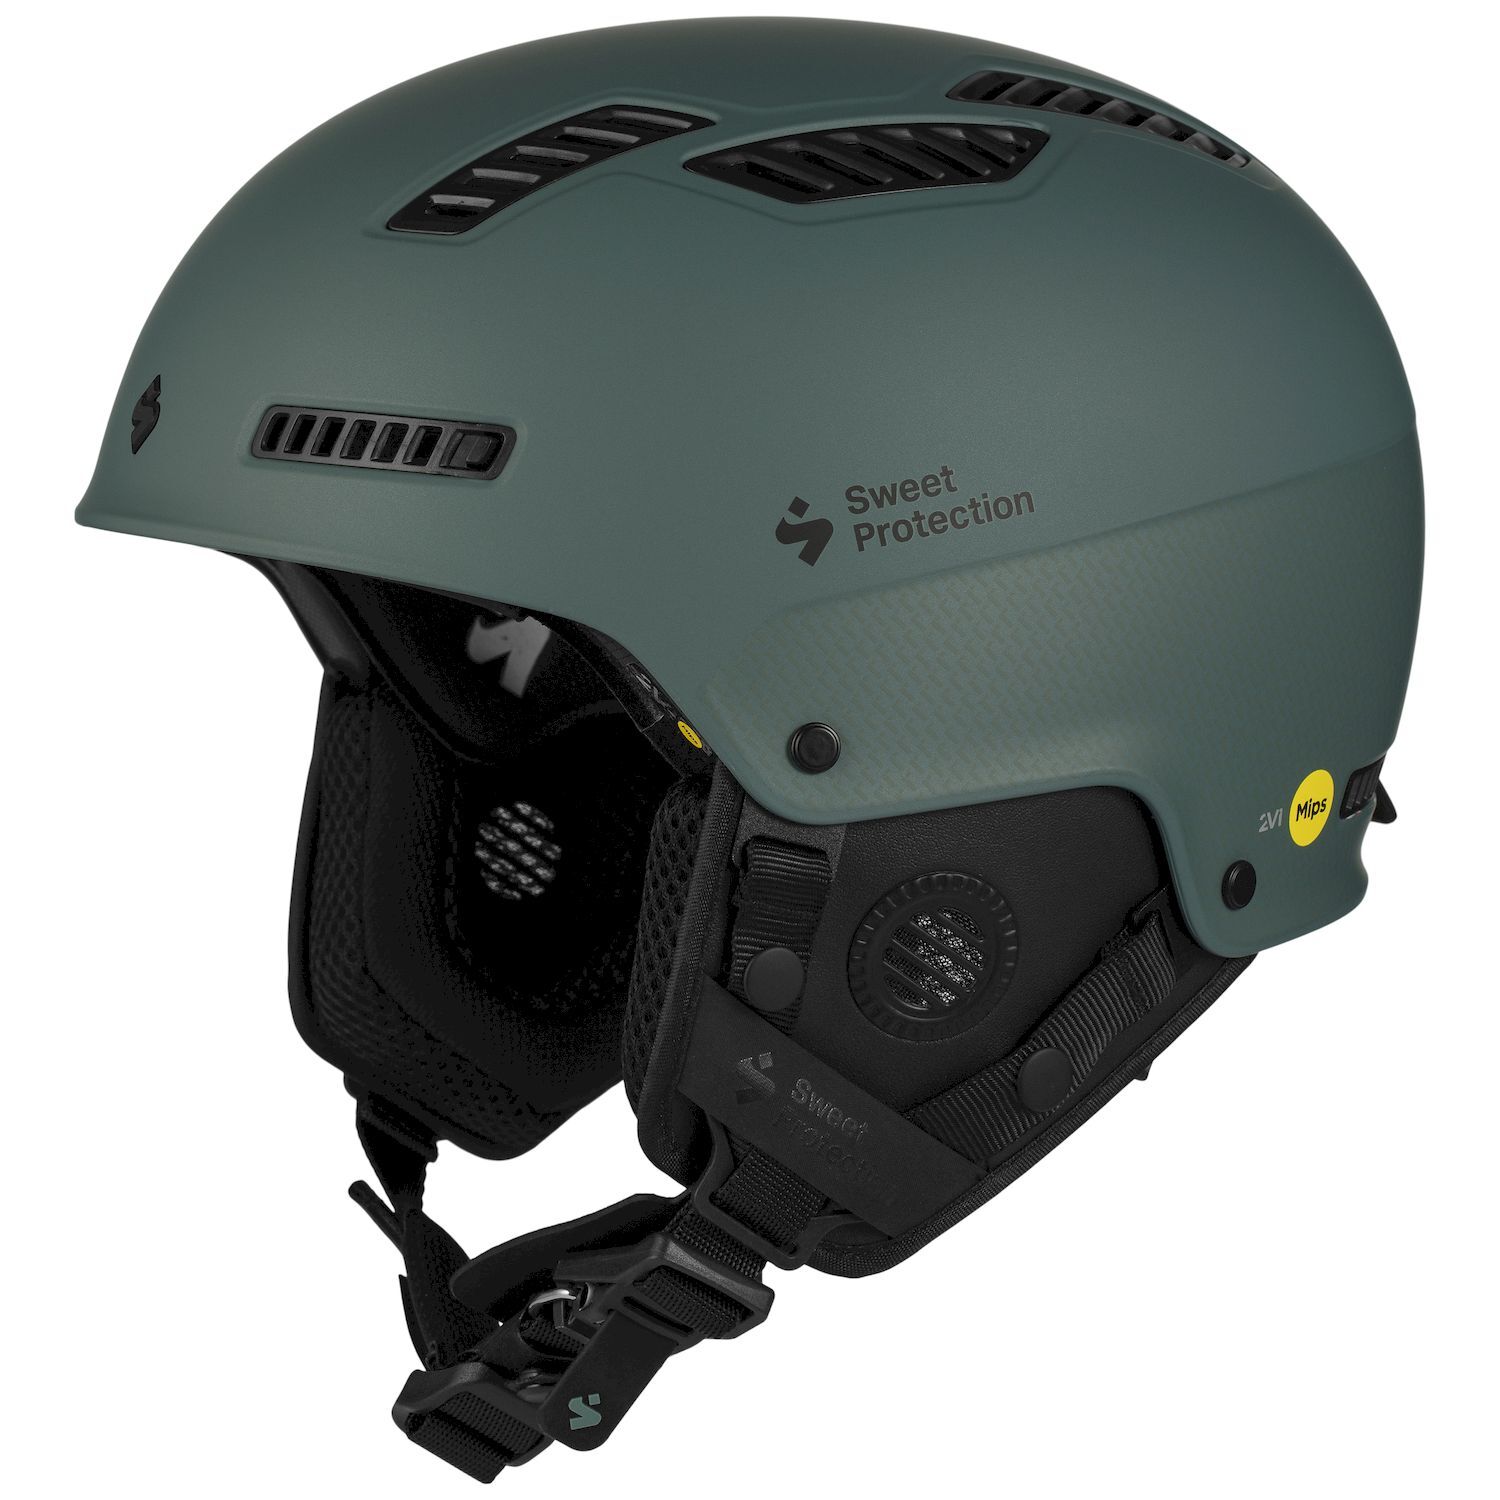 Sweet Protection Igniter 2Vi MIPS Helmet - Casco da sci - Uomo